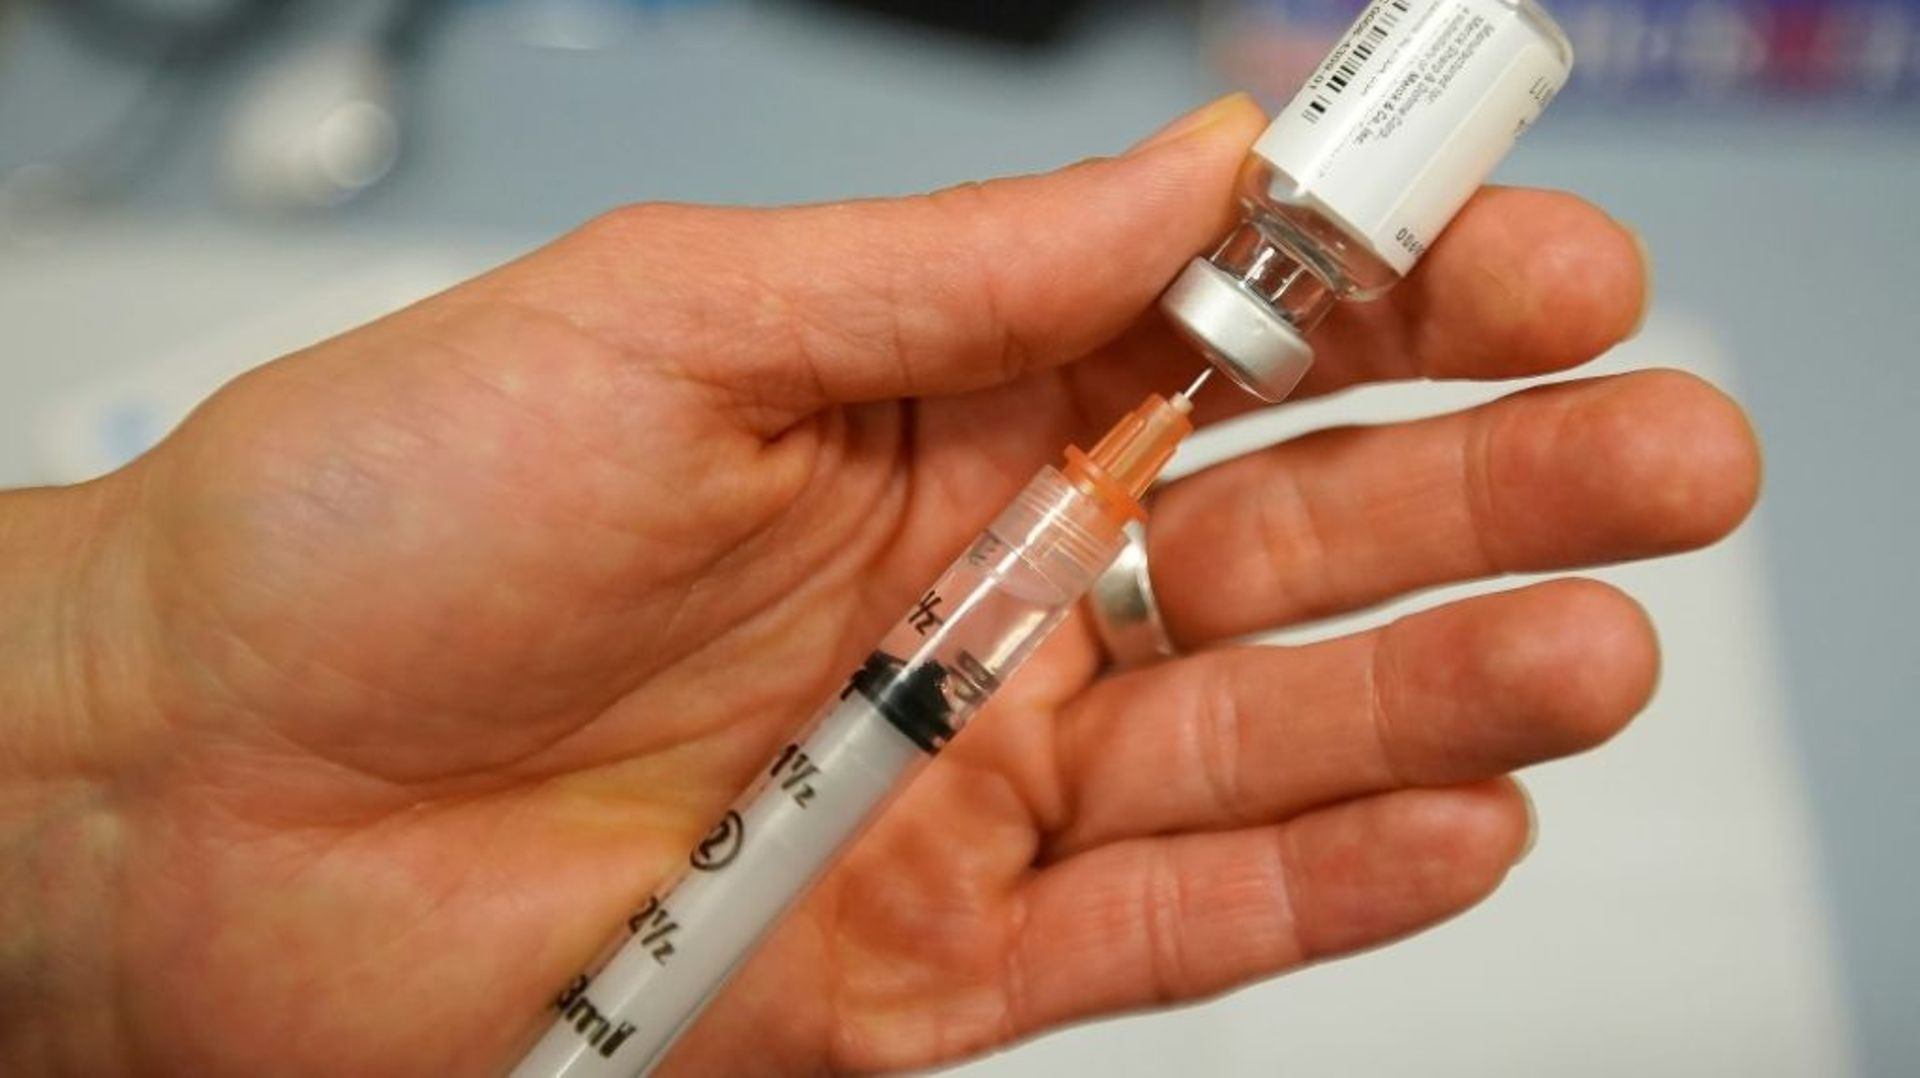 Les Instituts nationaux de la santé américains (NIH) et le groupe Johnson & Johnson tentent de développer un vaccin contre le nouveau coronavirus apparu en Chine